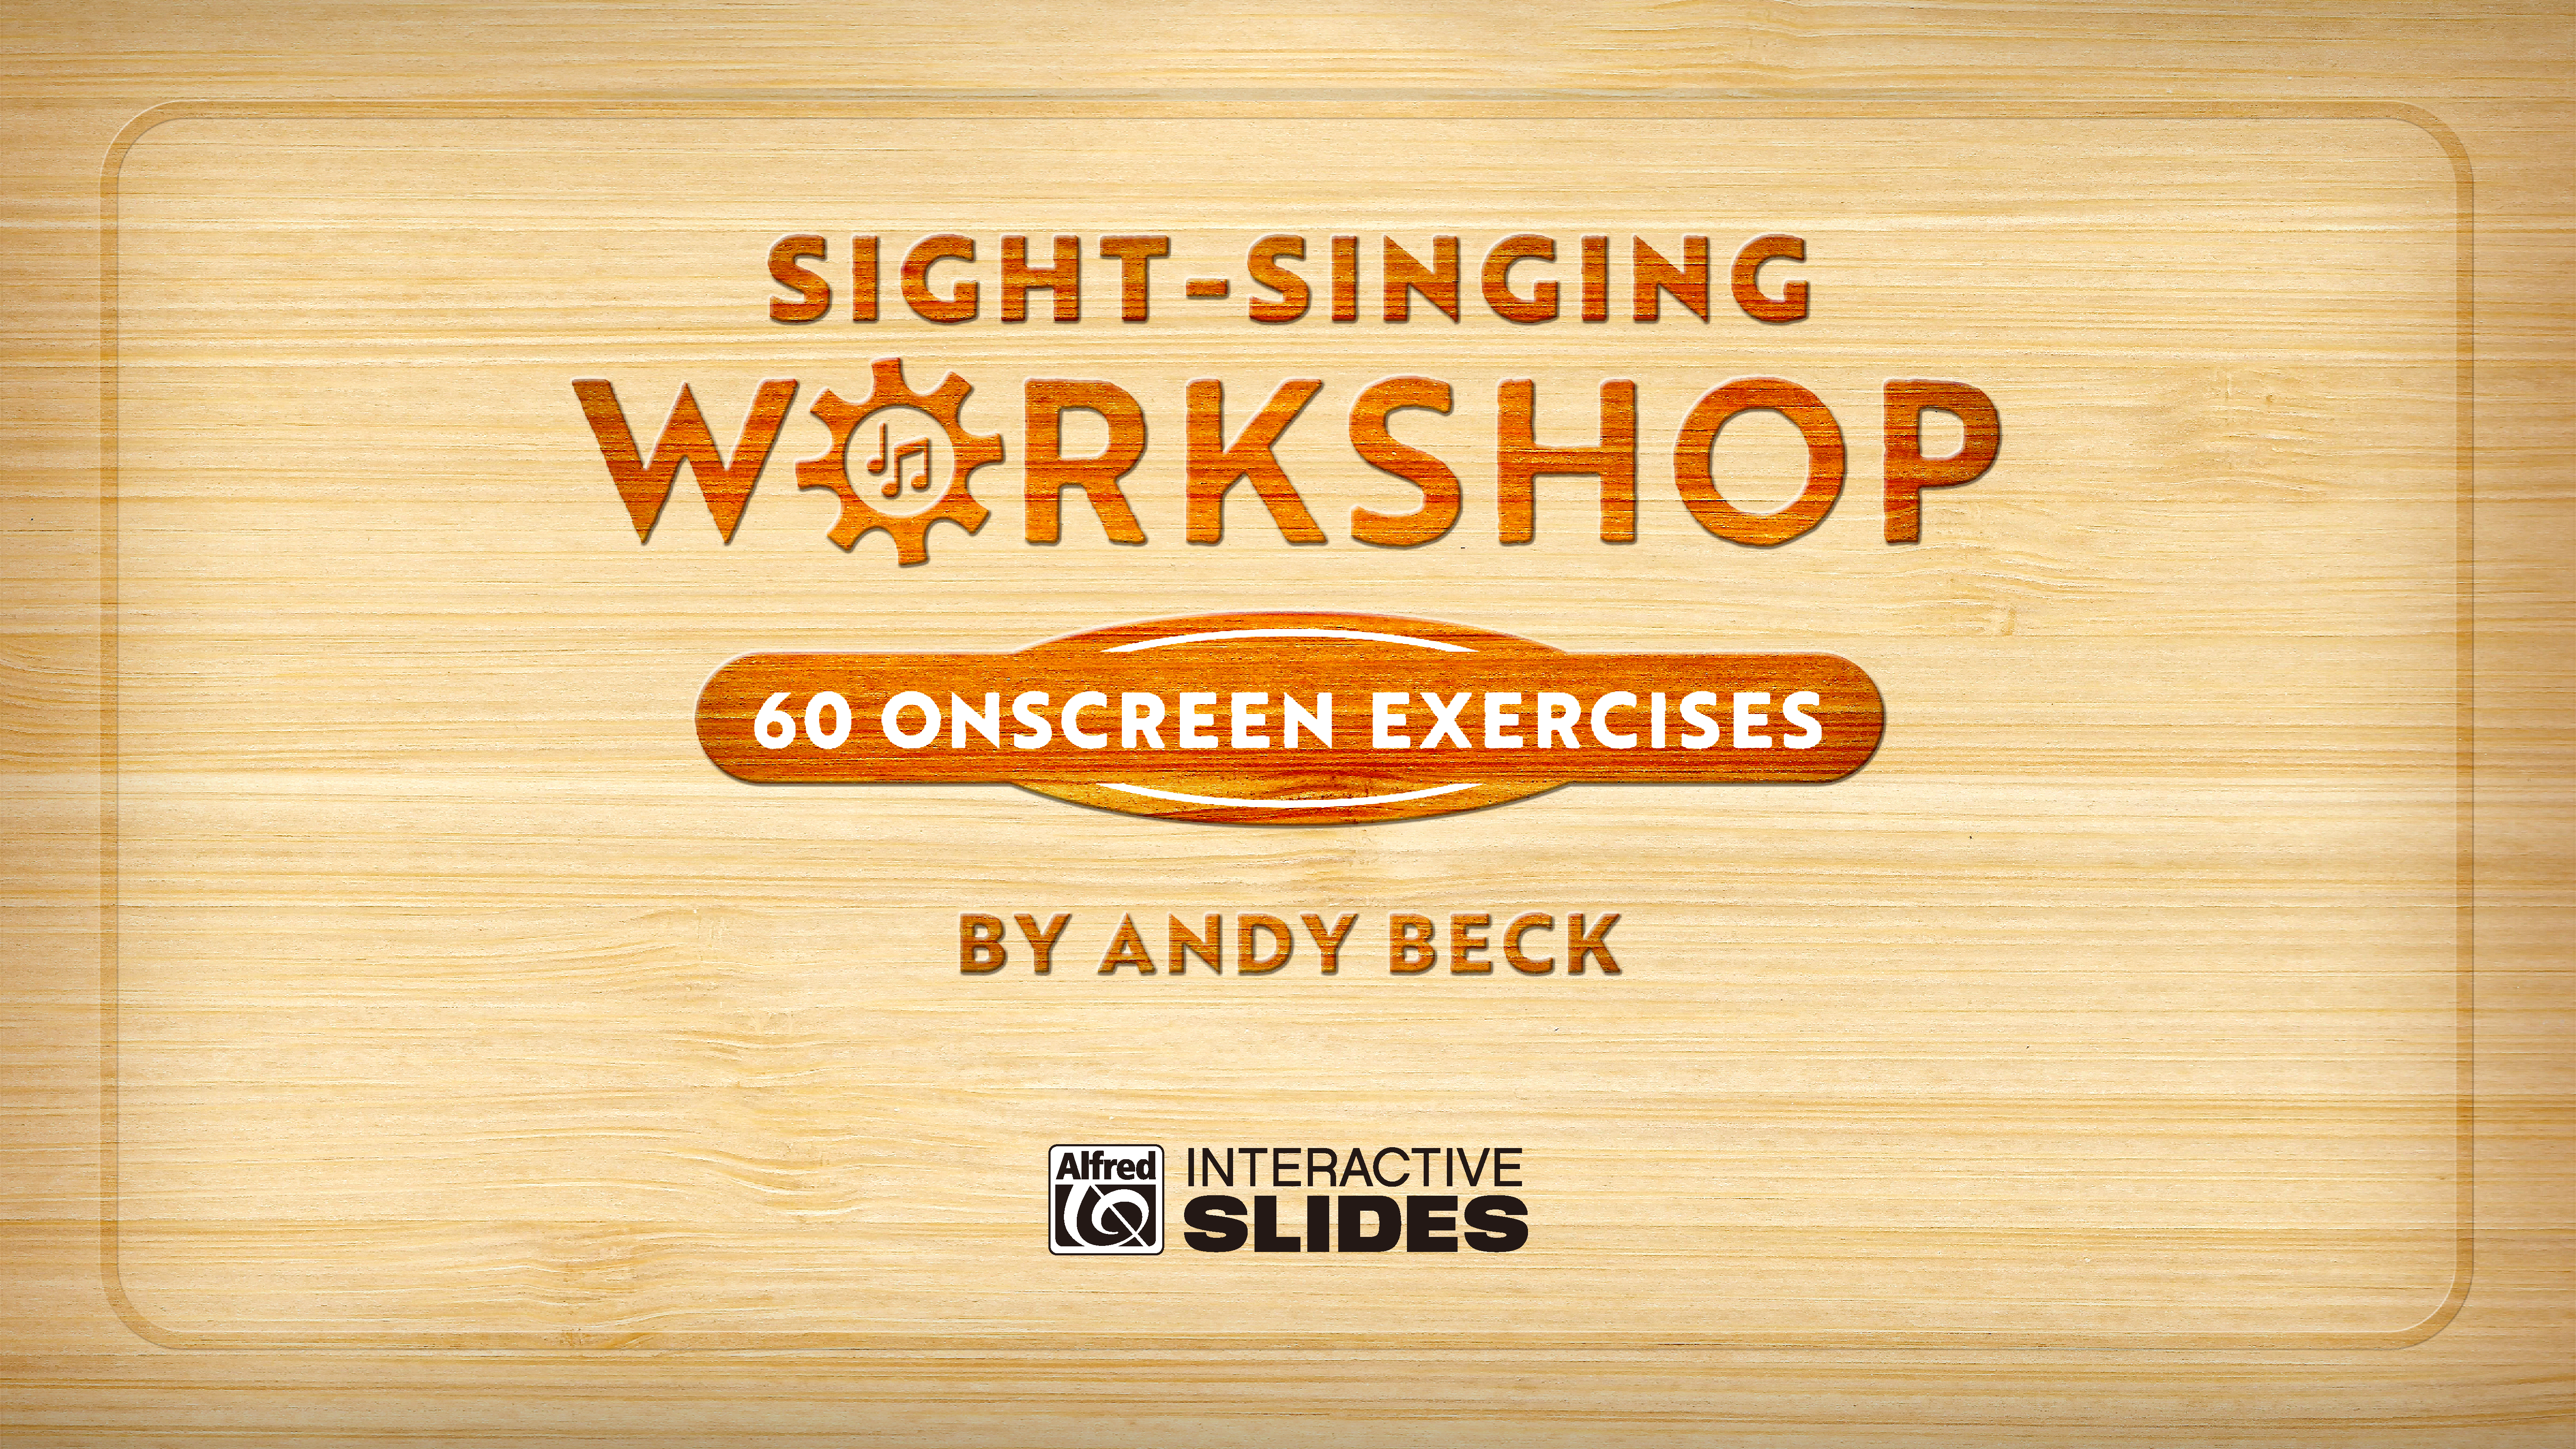 Sight-Singing Workshop